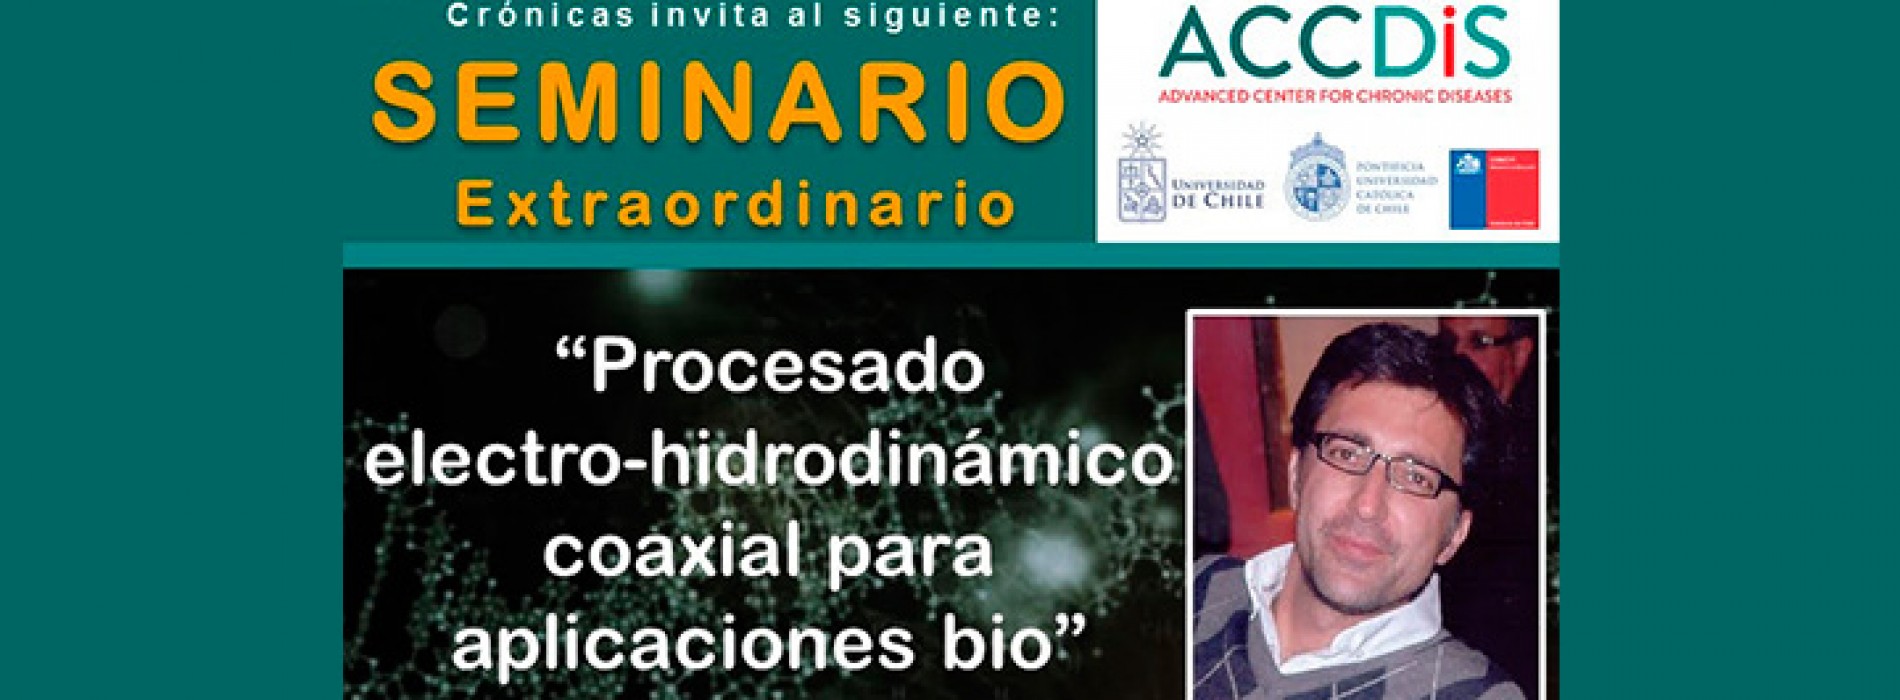 Seminario Extraordinario ACCDIS «Procesado electro-hidrodinámico coaxial para aplicaciones bio»